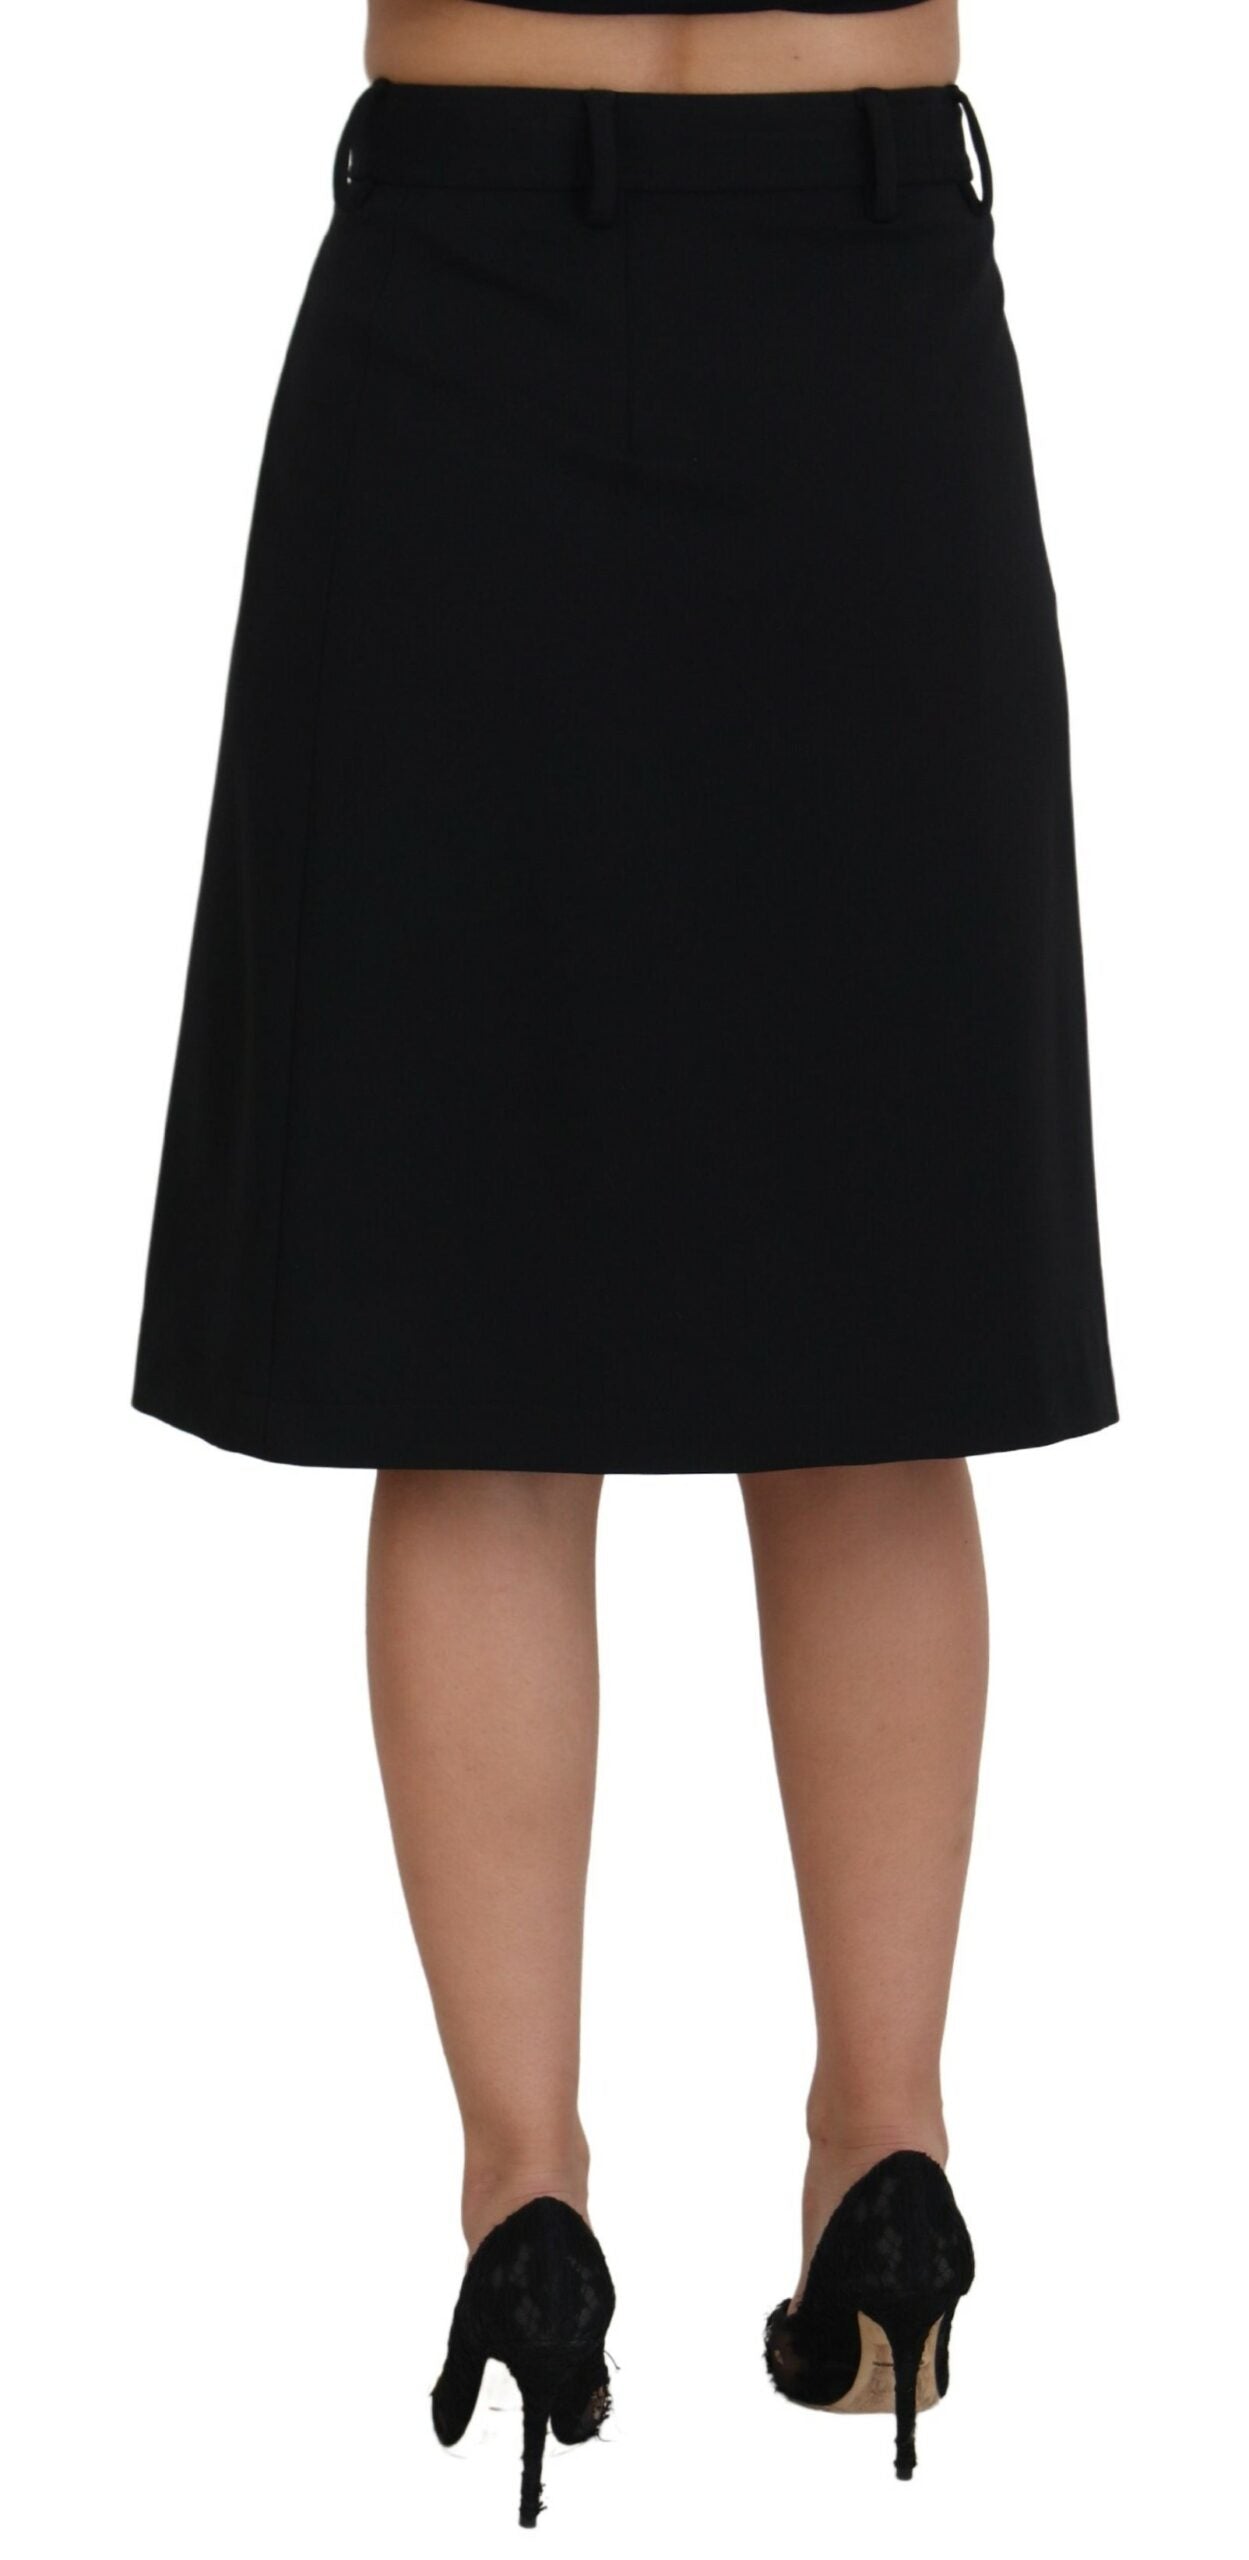 Black Wool Pencil Cut High Waist Skirt